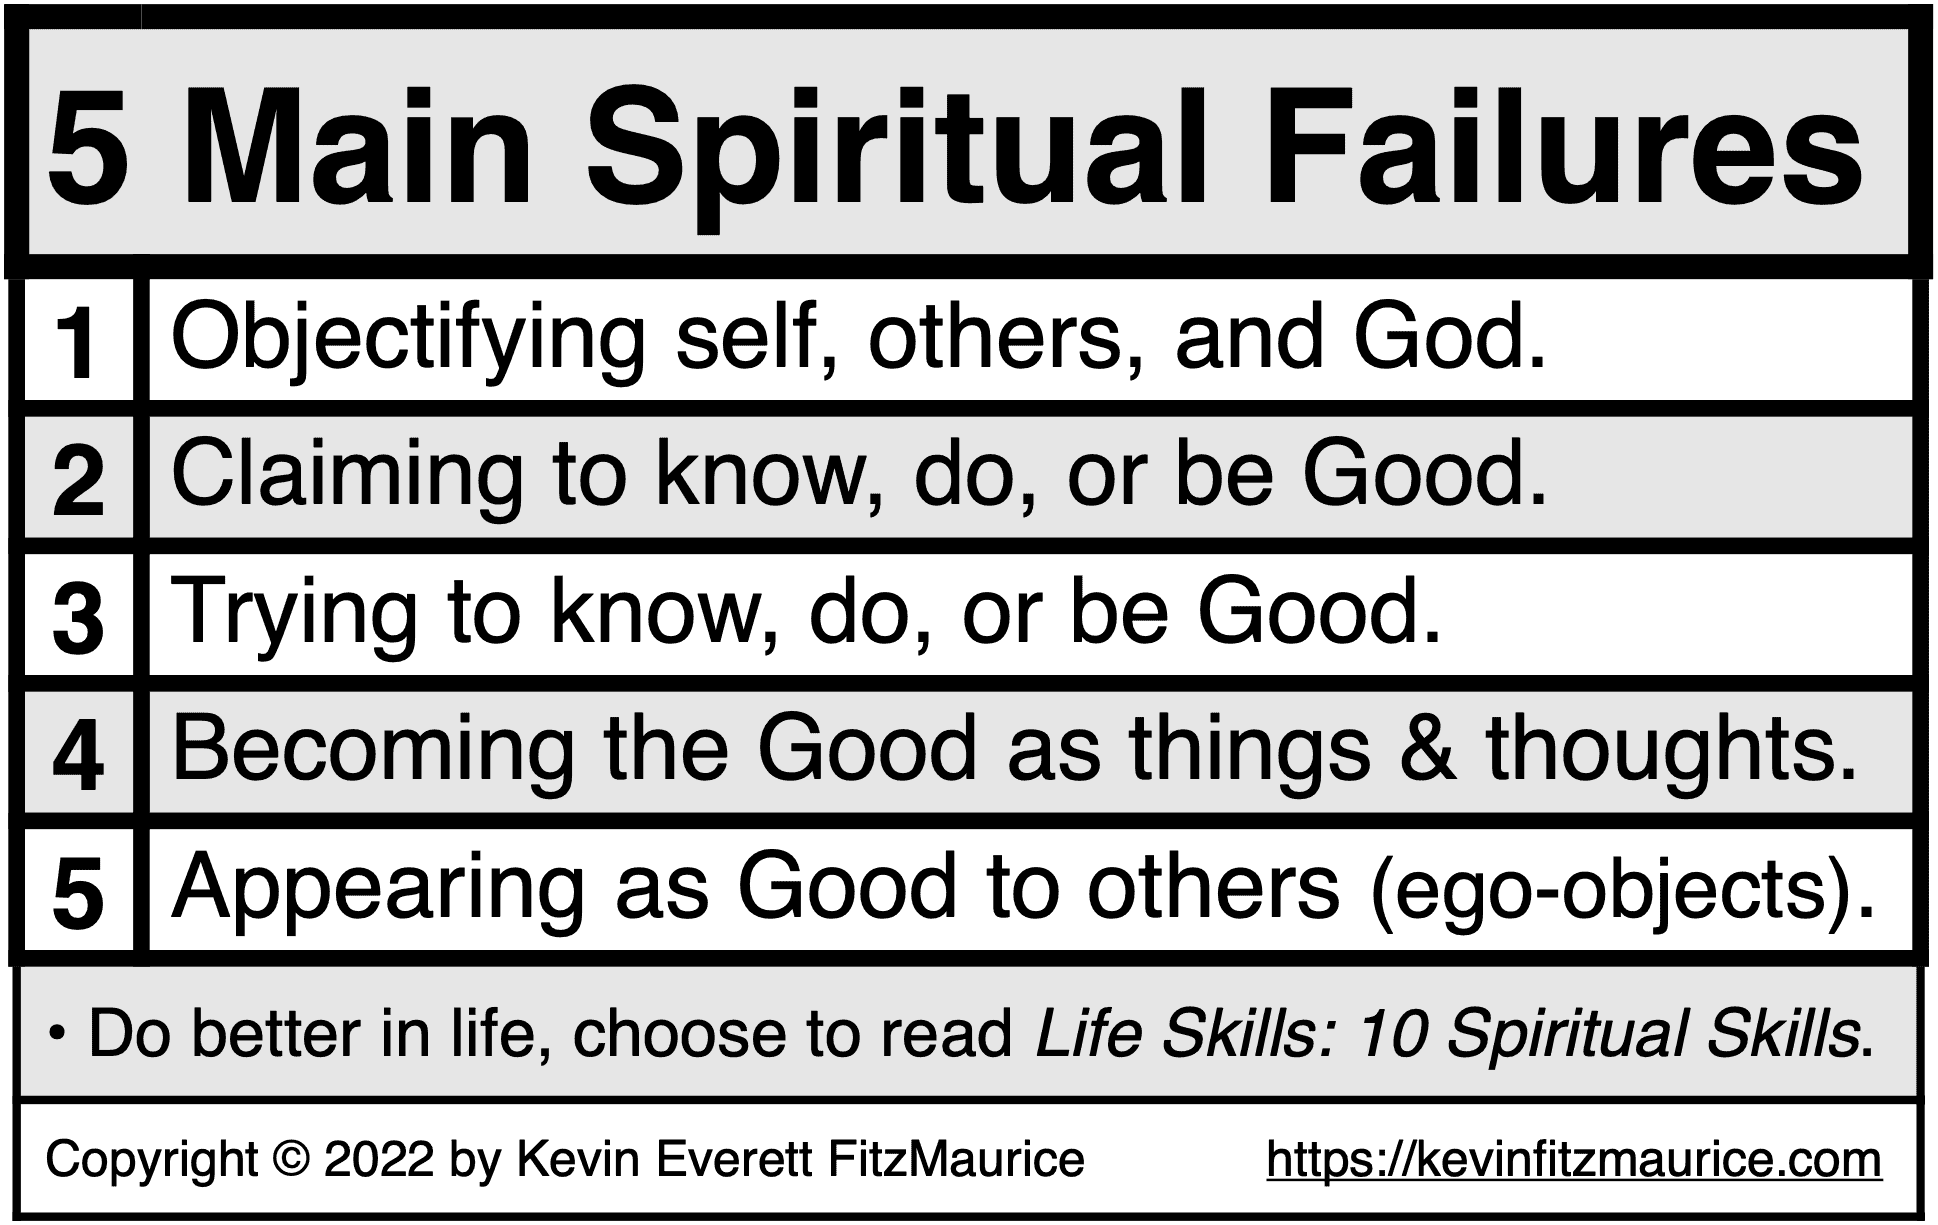 5 Main Spiritual Failures